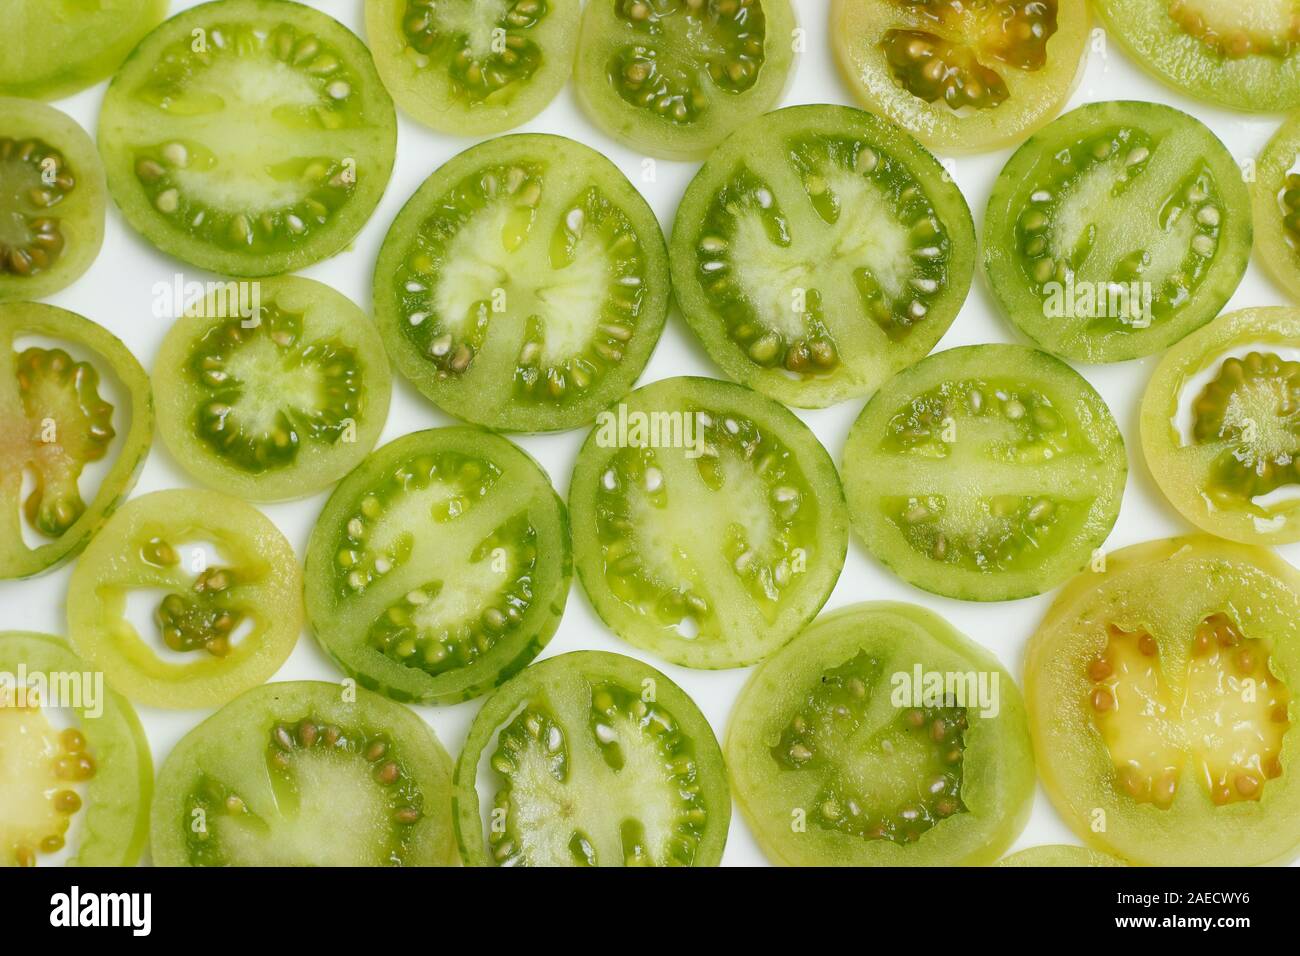 Solanum lycopesicum. Unripe green tomatoes sliced on white background. Stock Photo